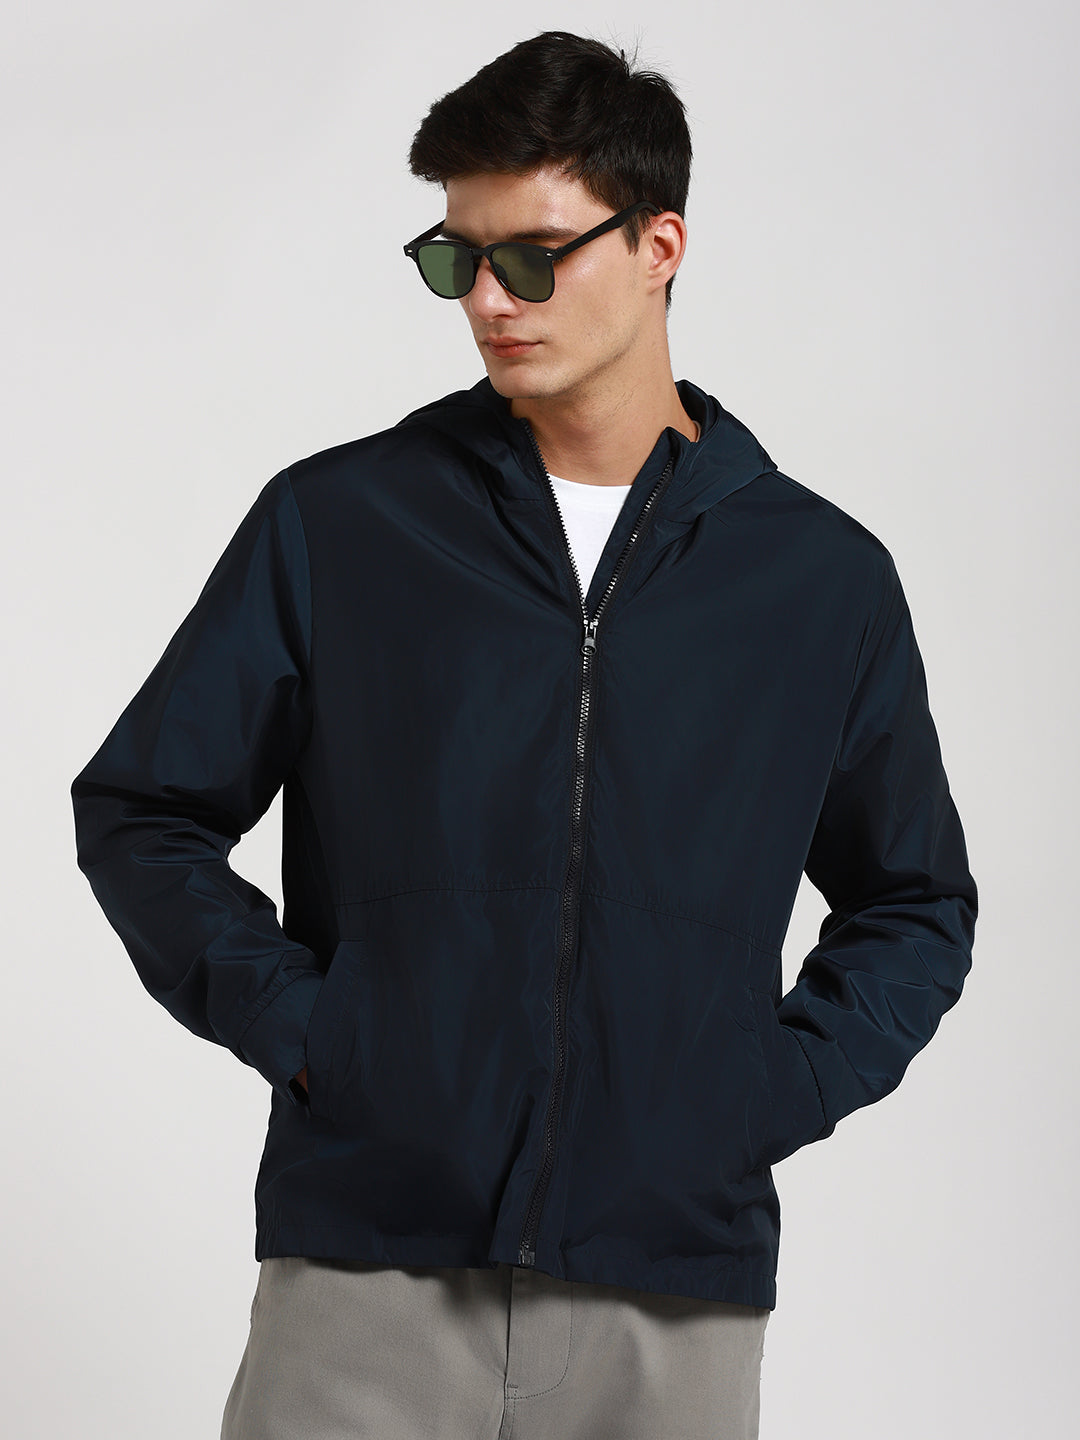 Dennis Lingo Men's Hooded Regular Fit Solid Indigo Jackets – DENNIS LINGO